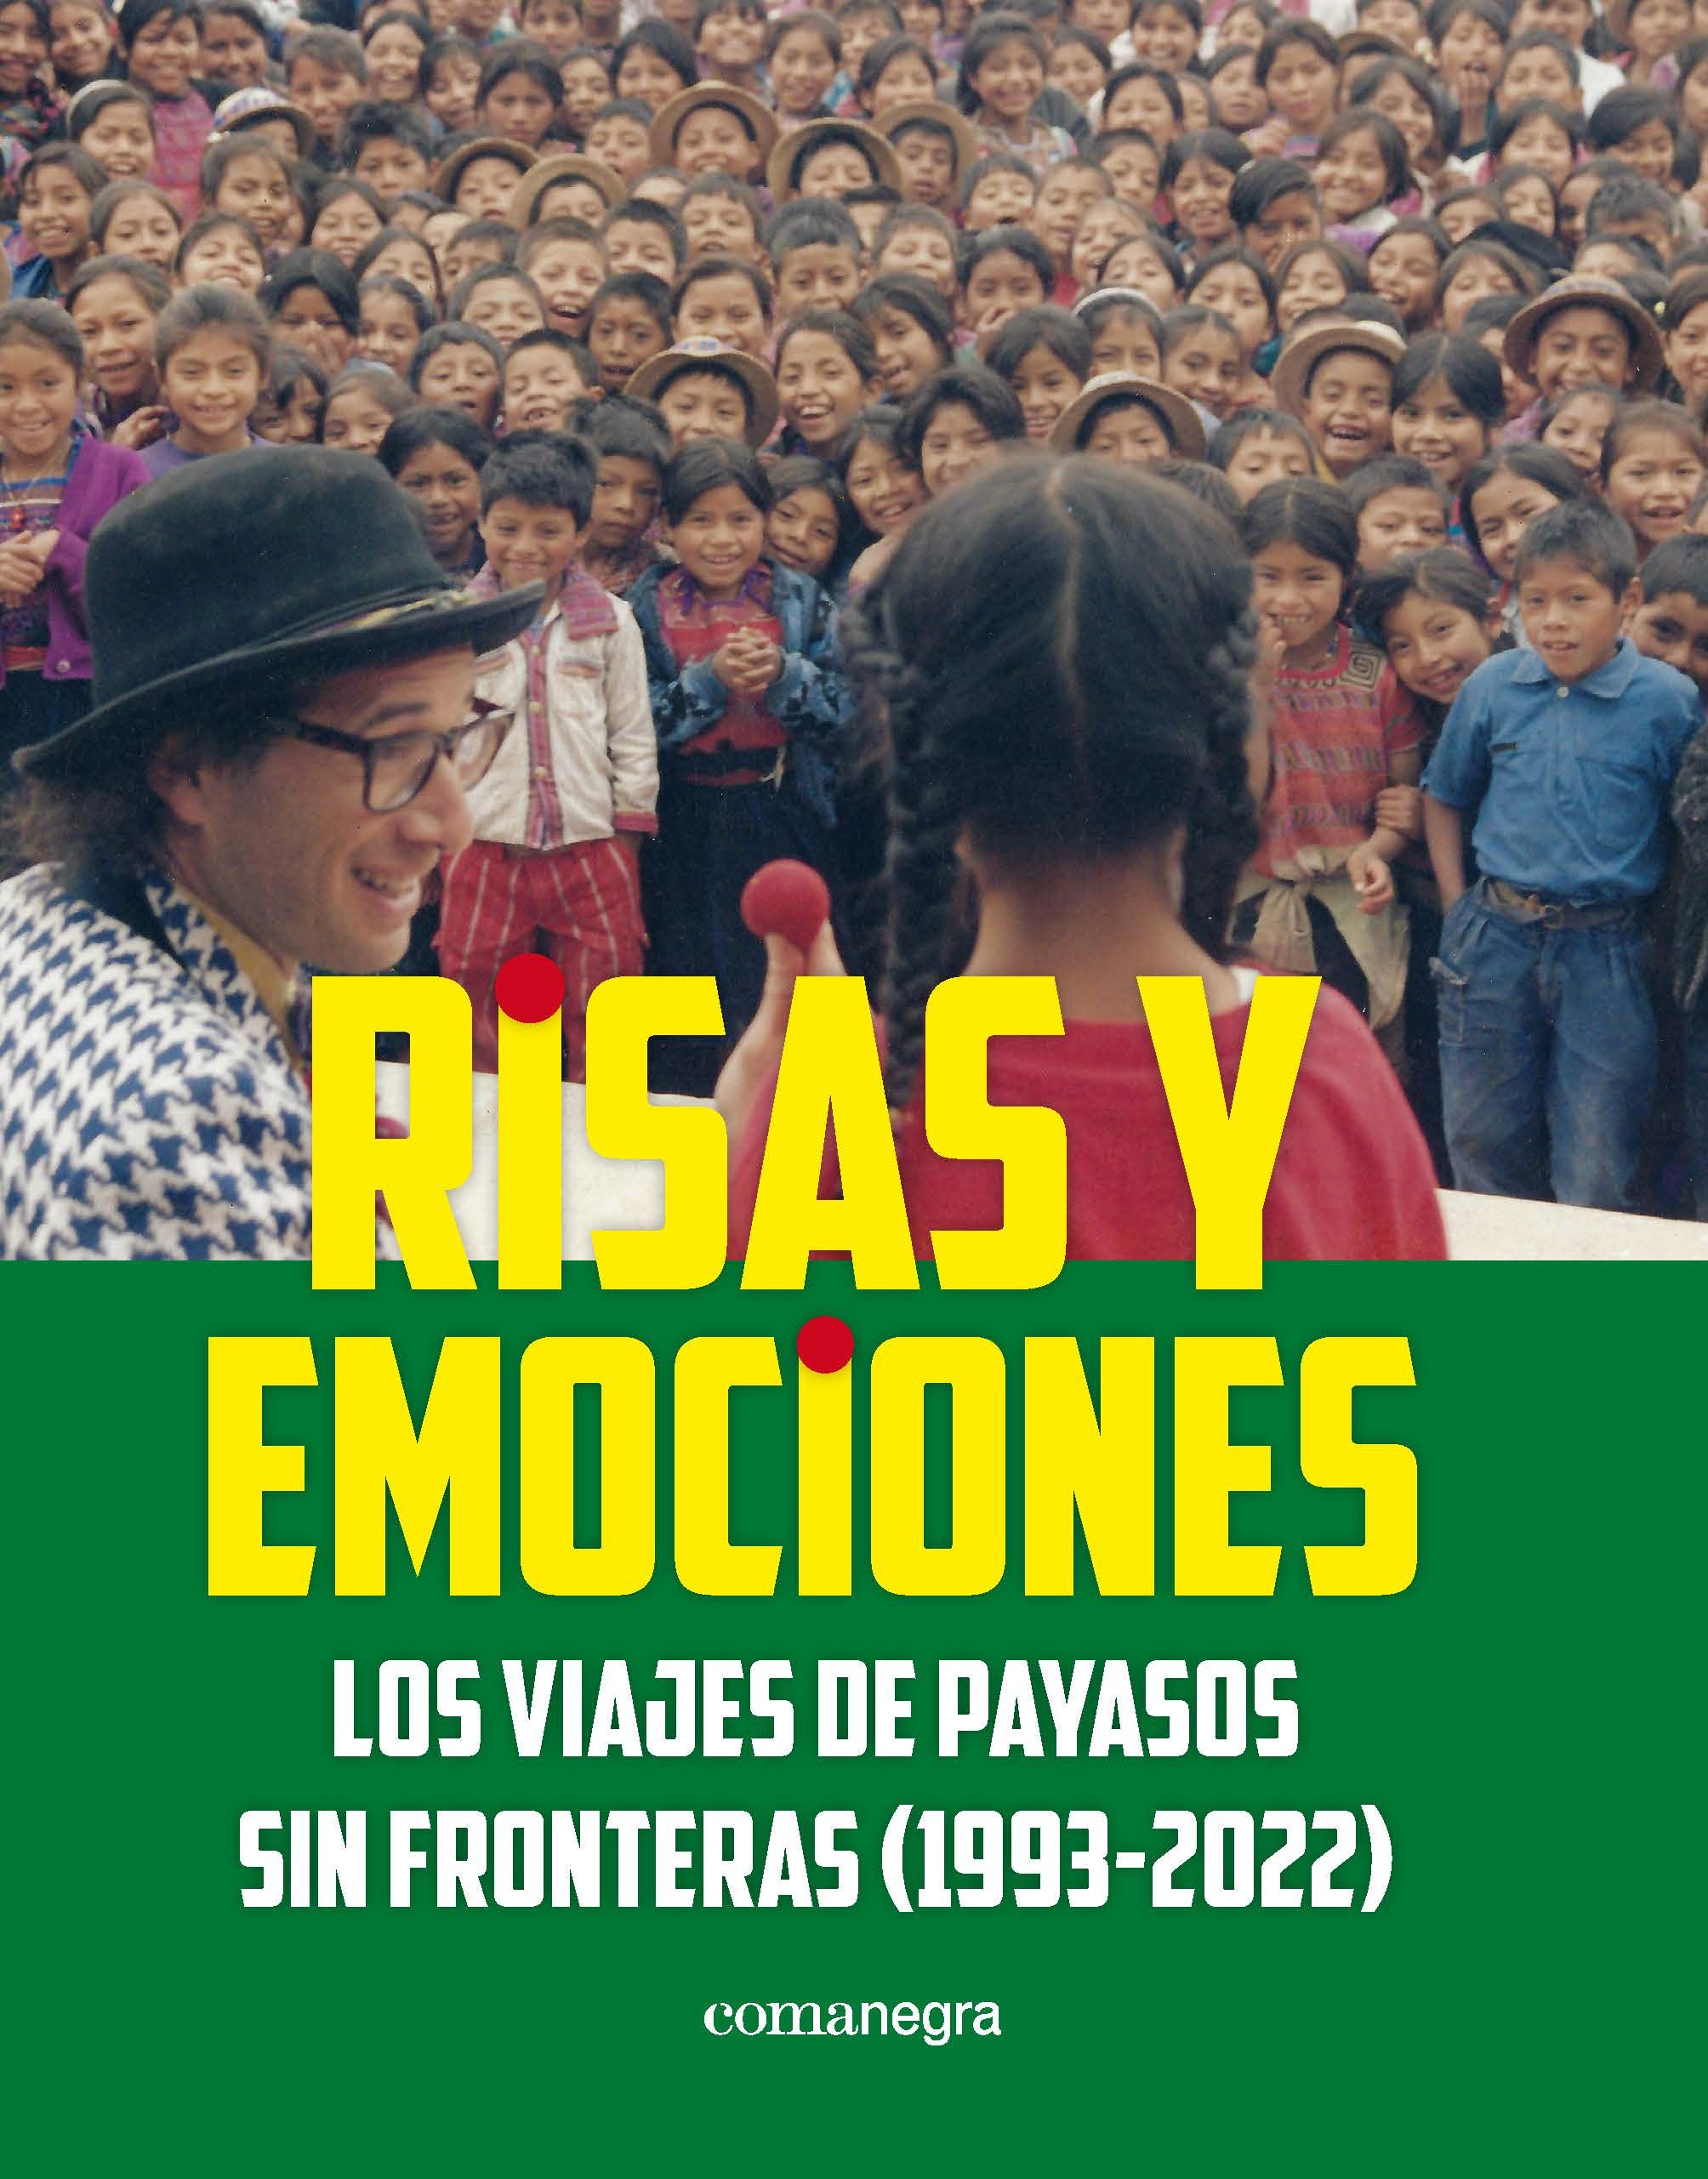 RISAS Y EMOCIONES. LOS VIAJES DE PAYASOS SIN FRONTERAS (1993-2022)